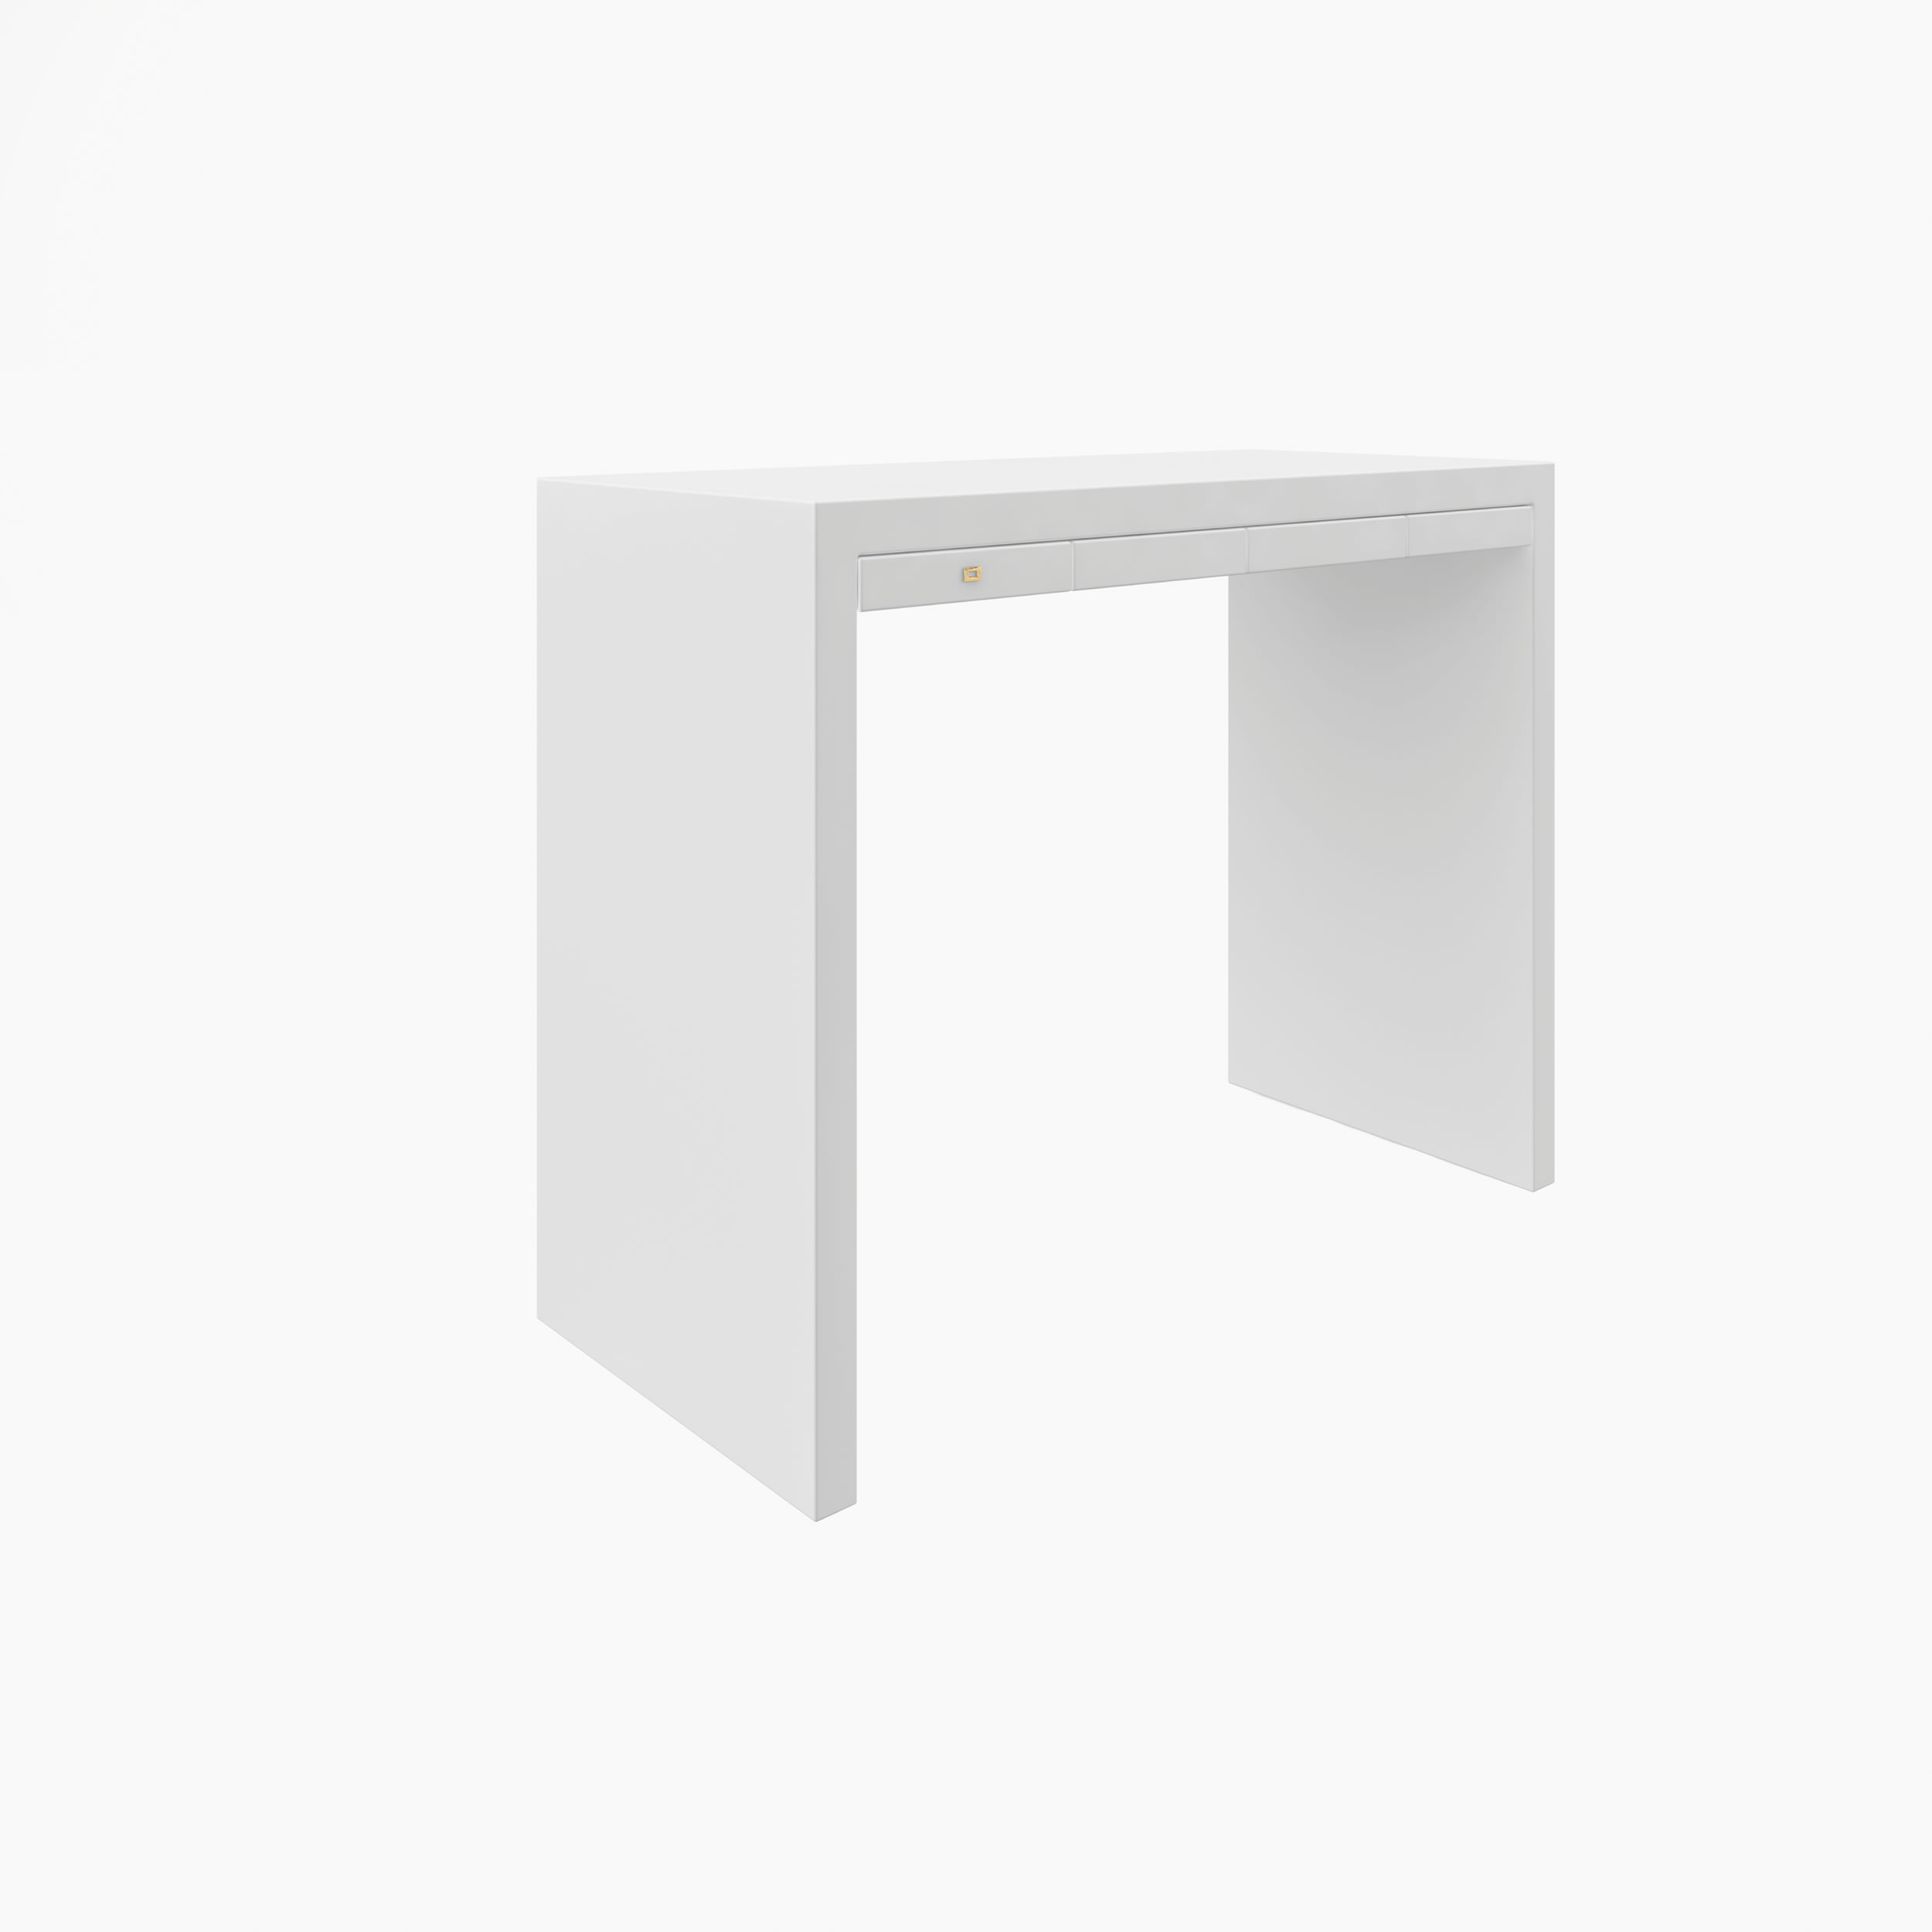 Konsoleig weiss all white Buero art furniture Konsolen FS 26 FELIX SCHWAKE